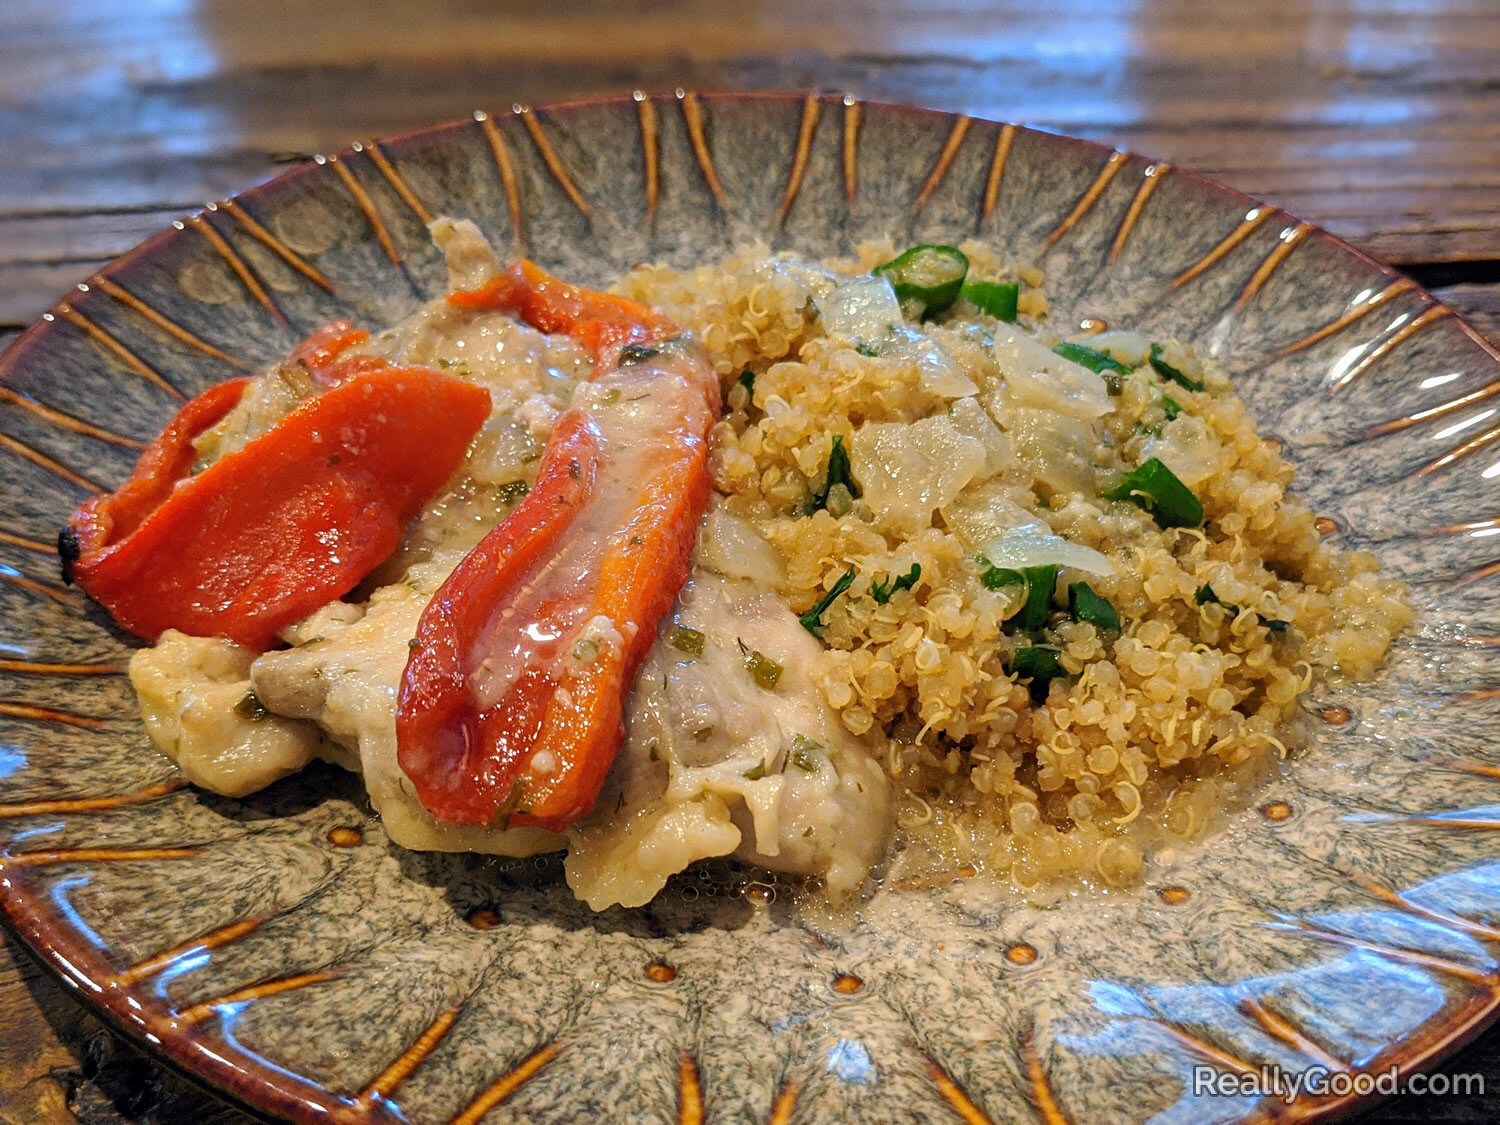 Chicken and quinoa